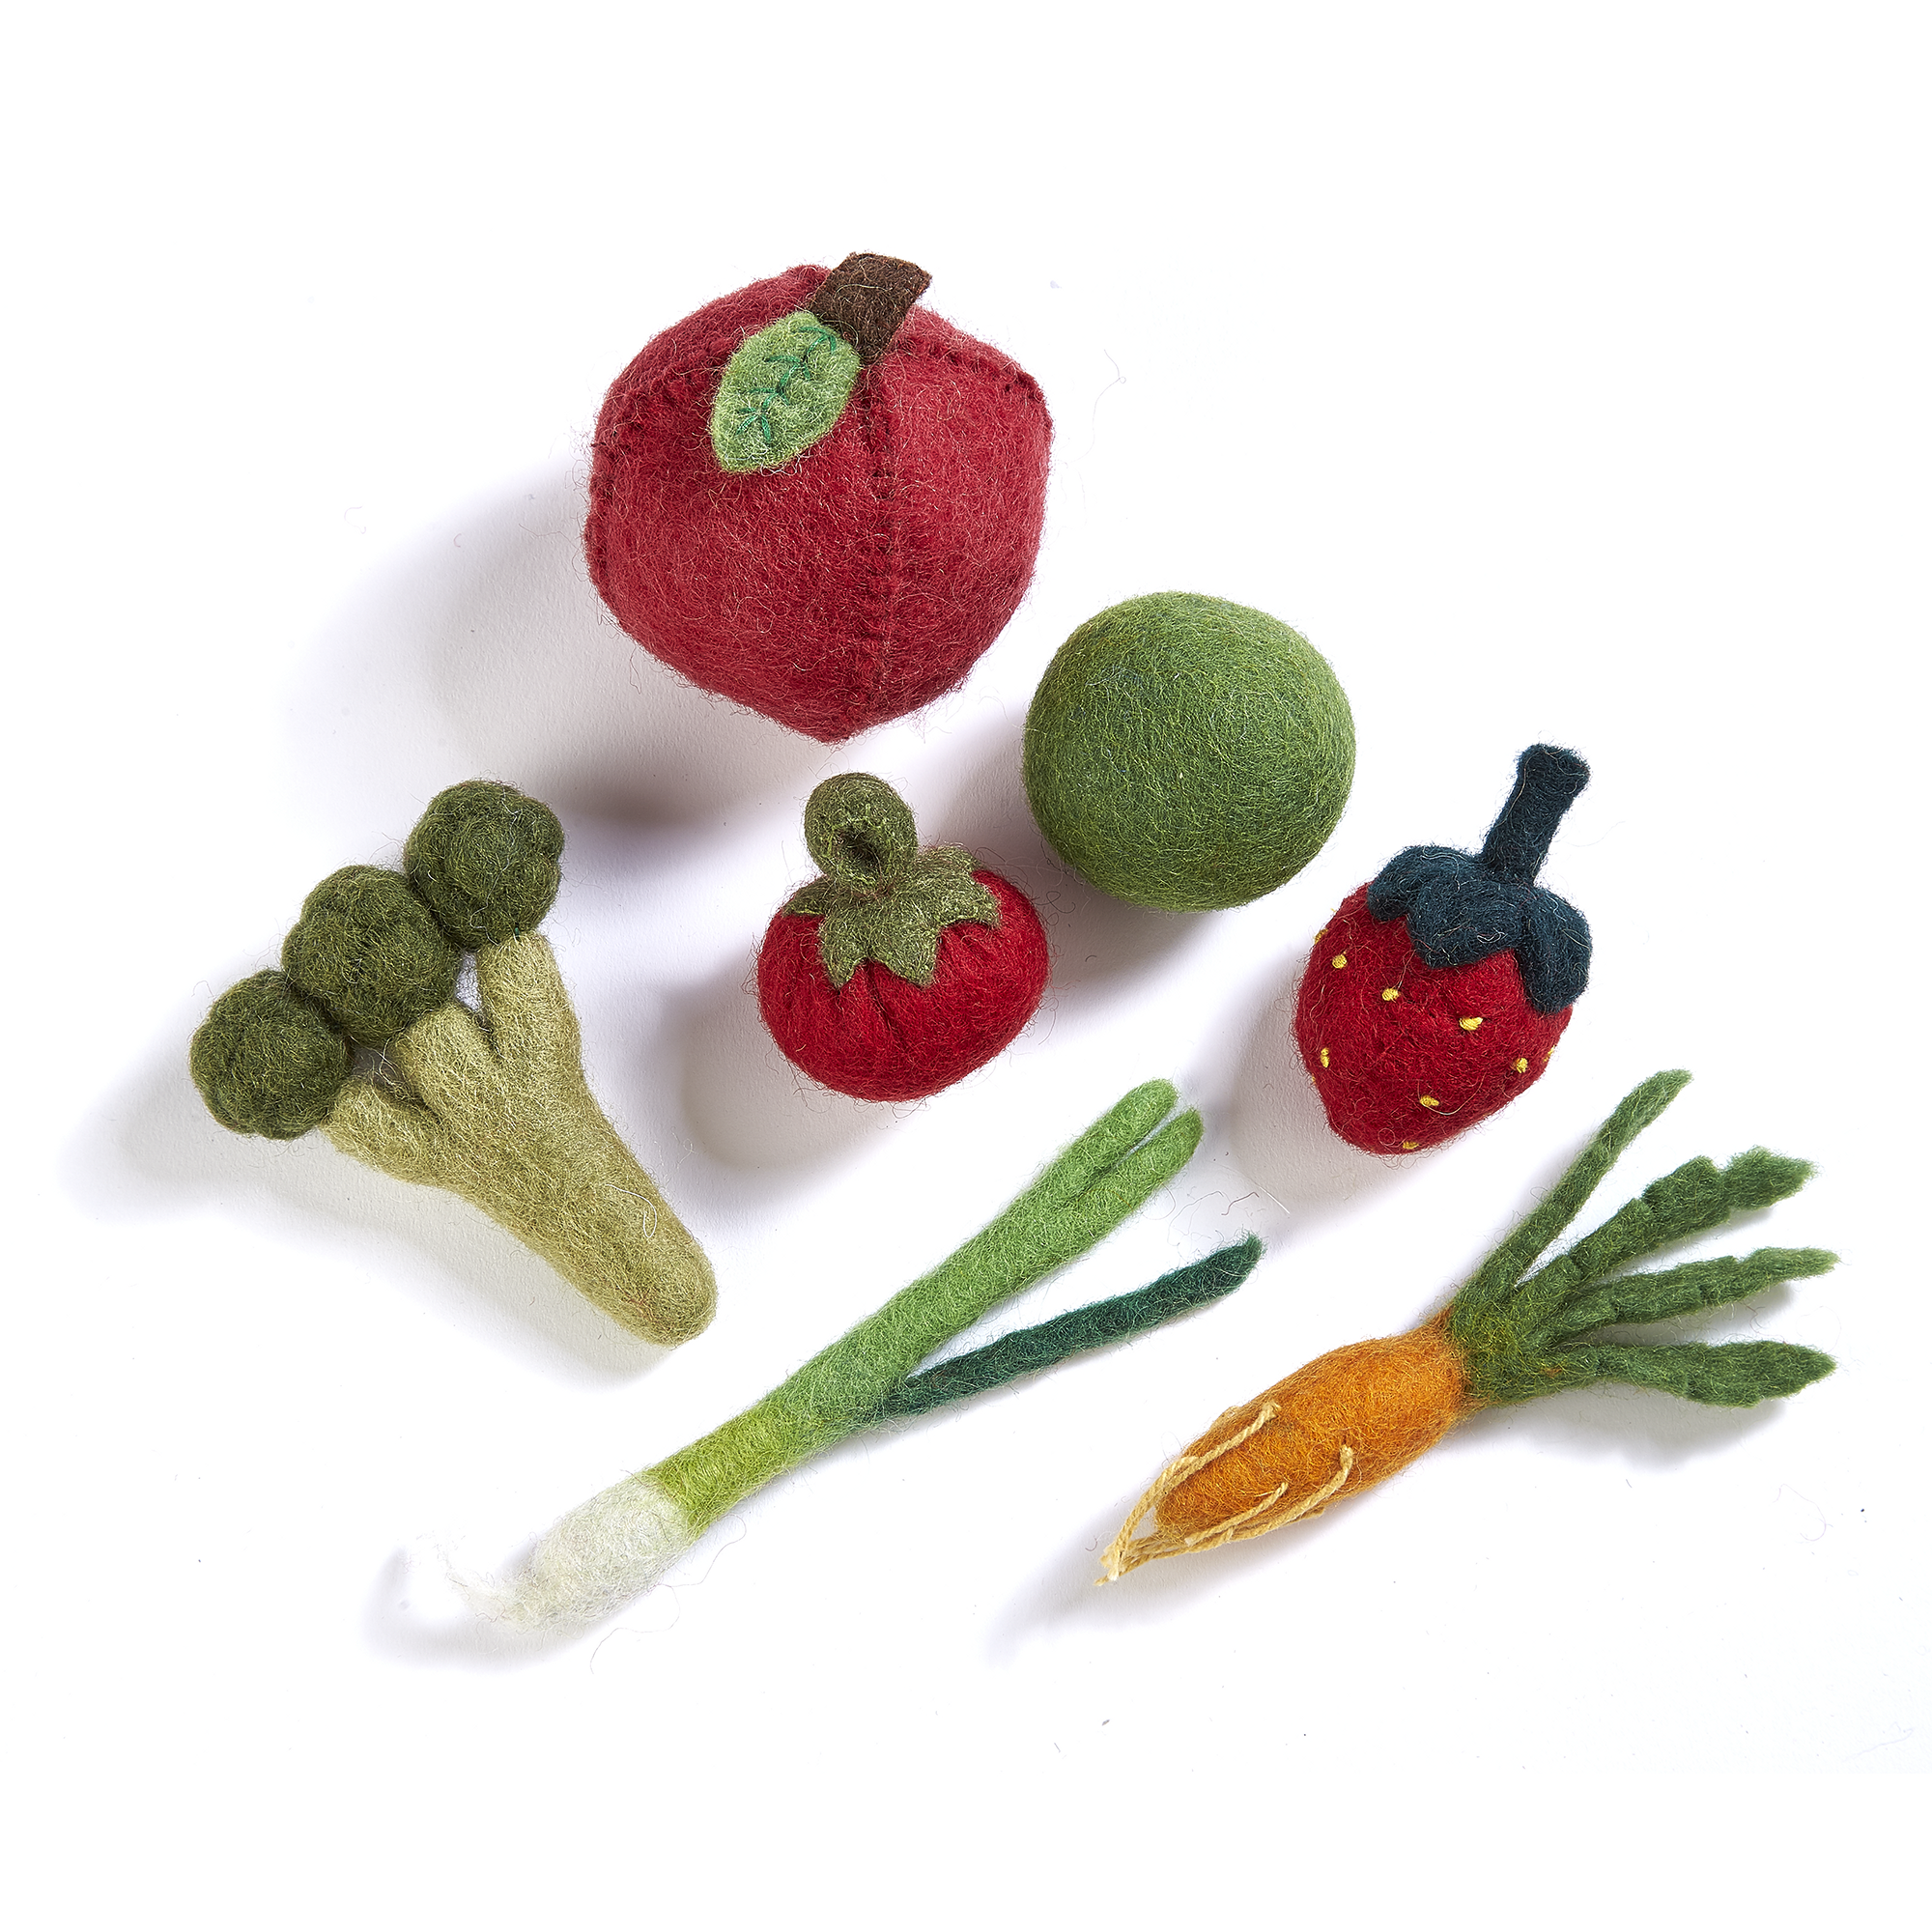 Felt Food Groups - Fruit Veg Bag